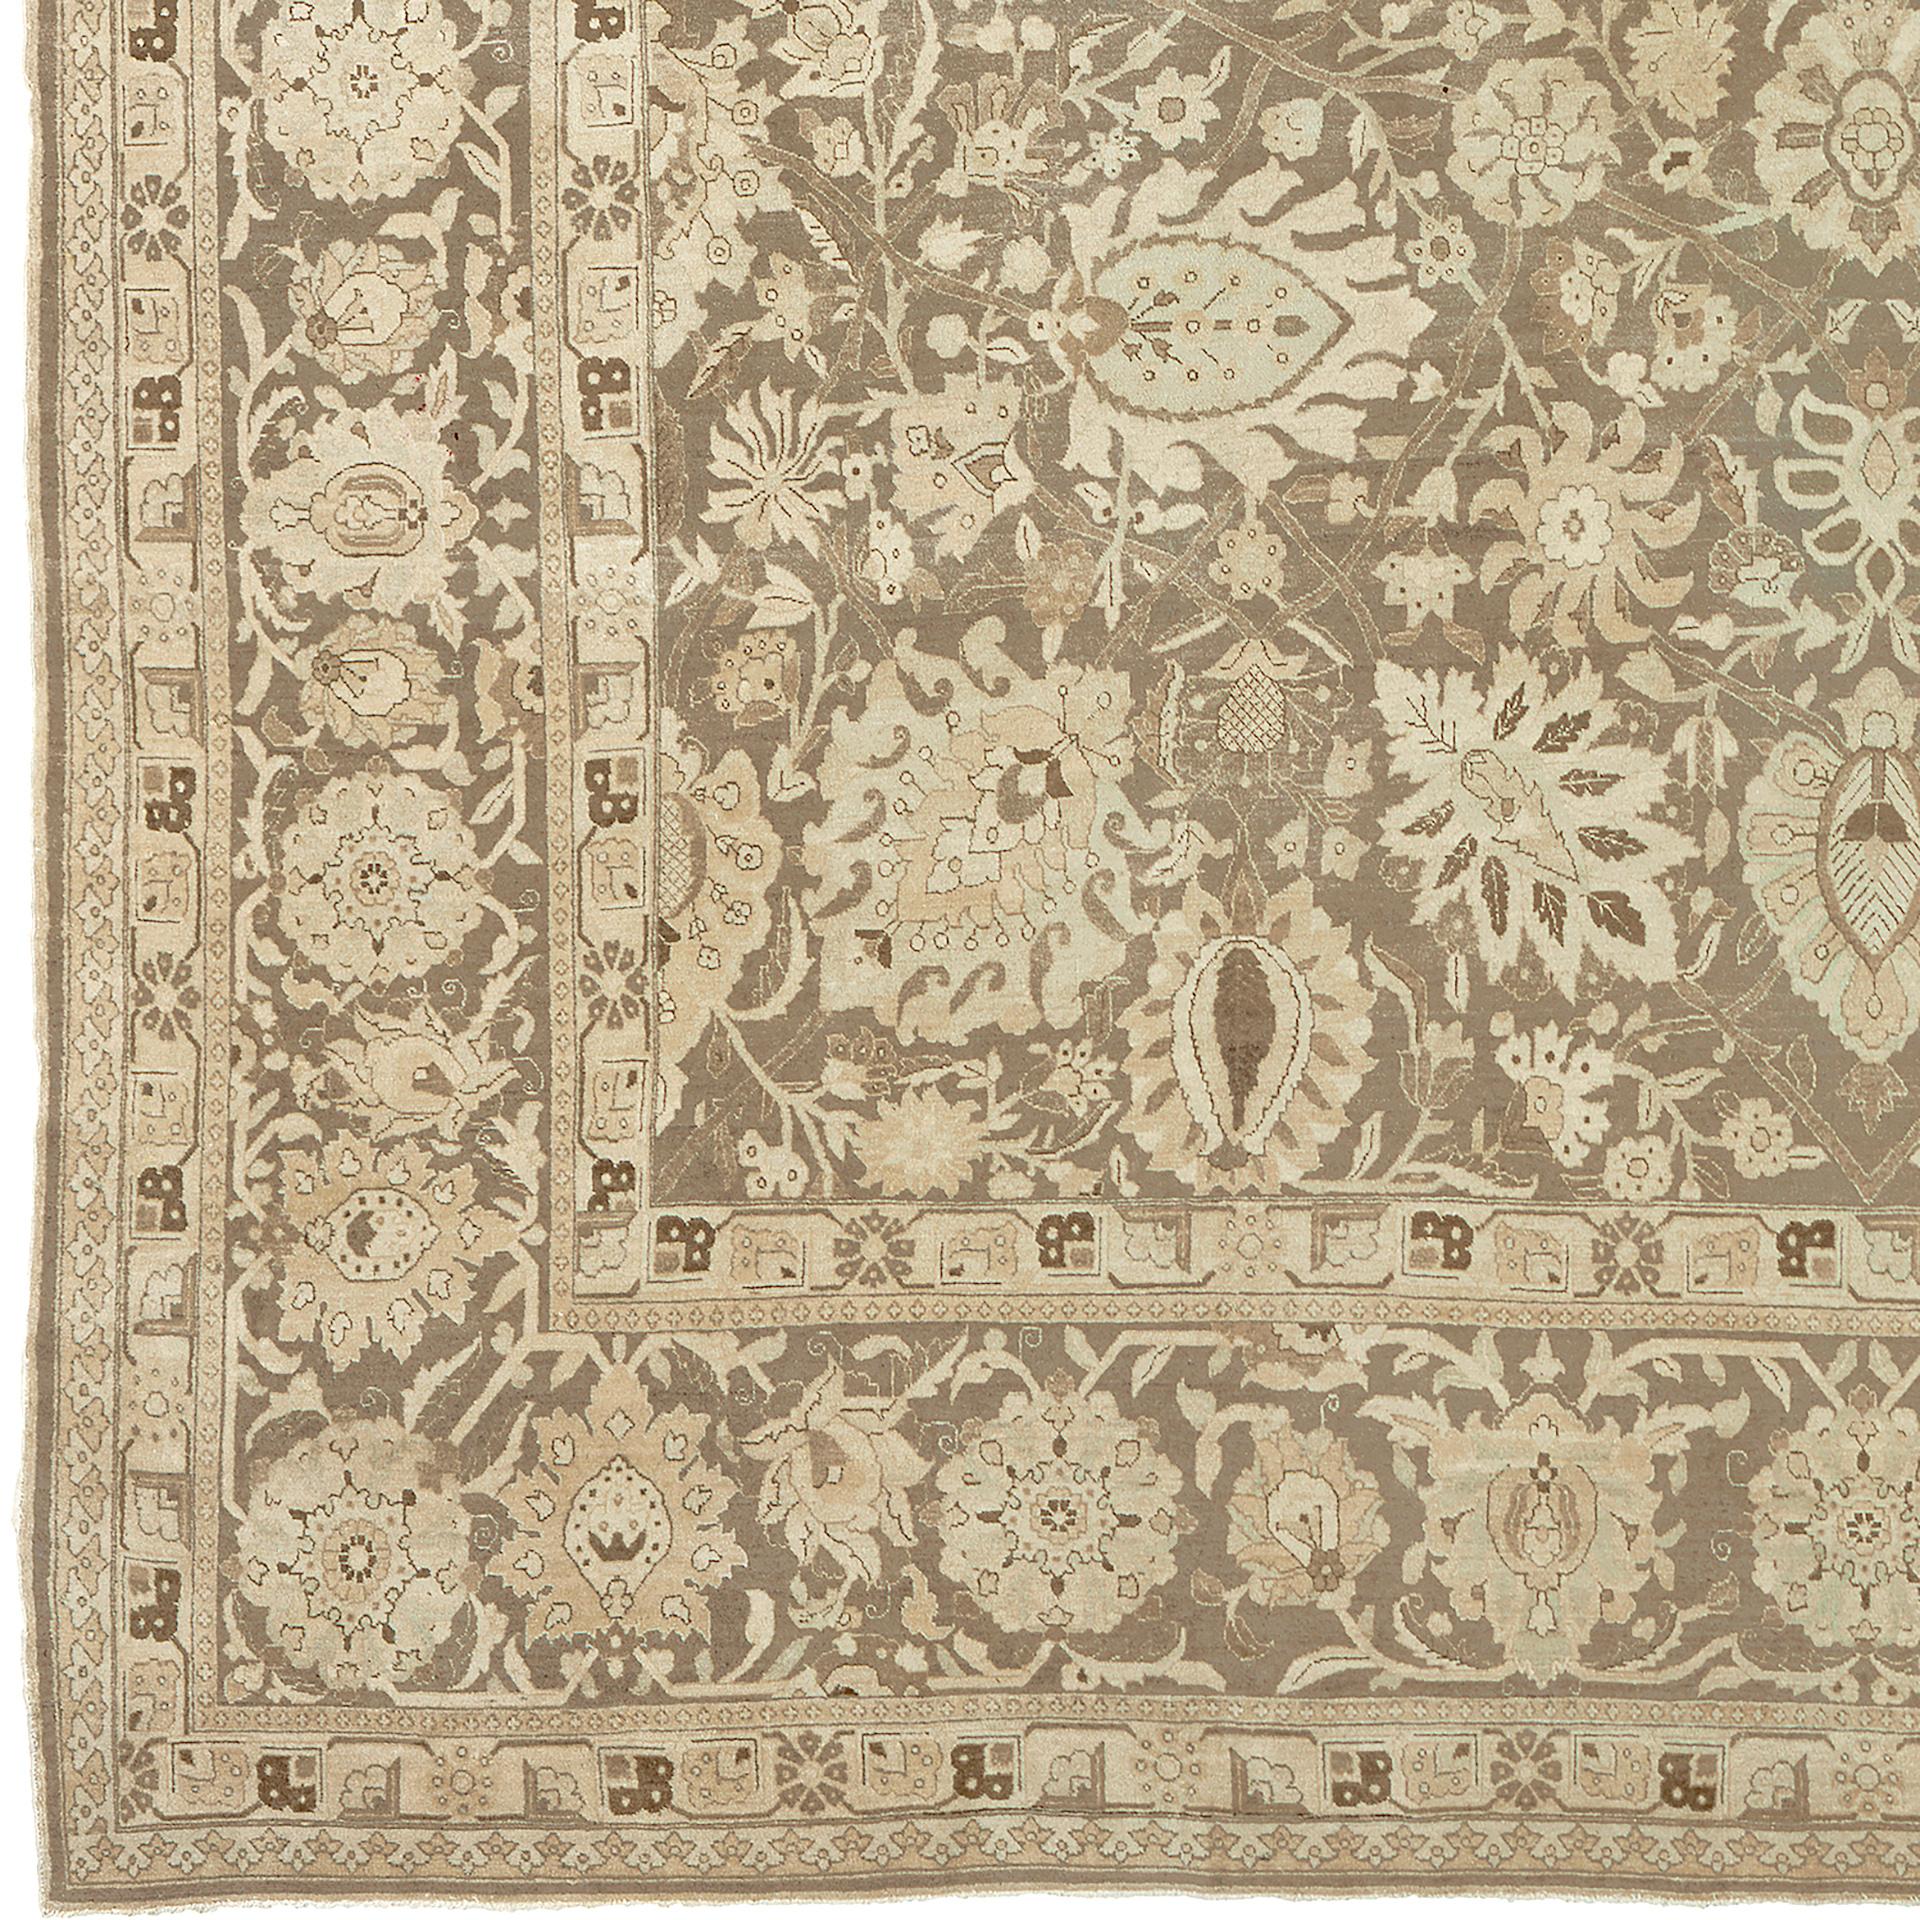 Antique Persian Tabriz rug
North-West Persia, circa 1890
21'3